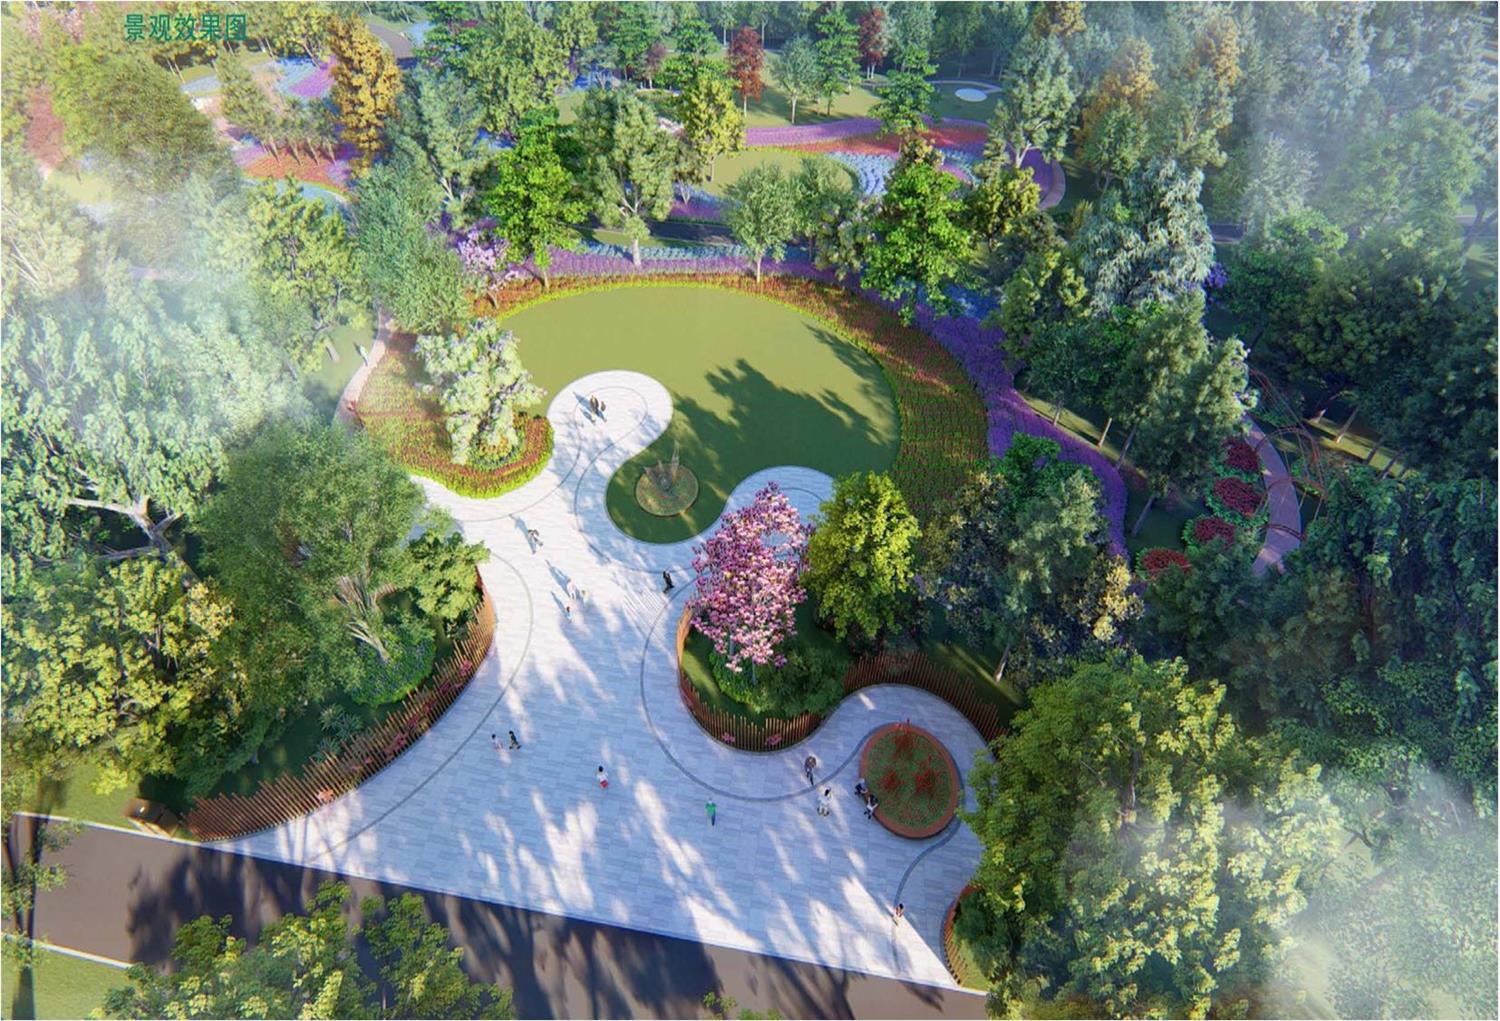 合肥植物园扩建二期景观绿化工程